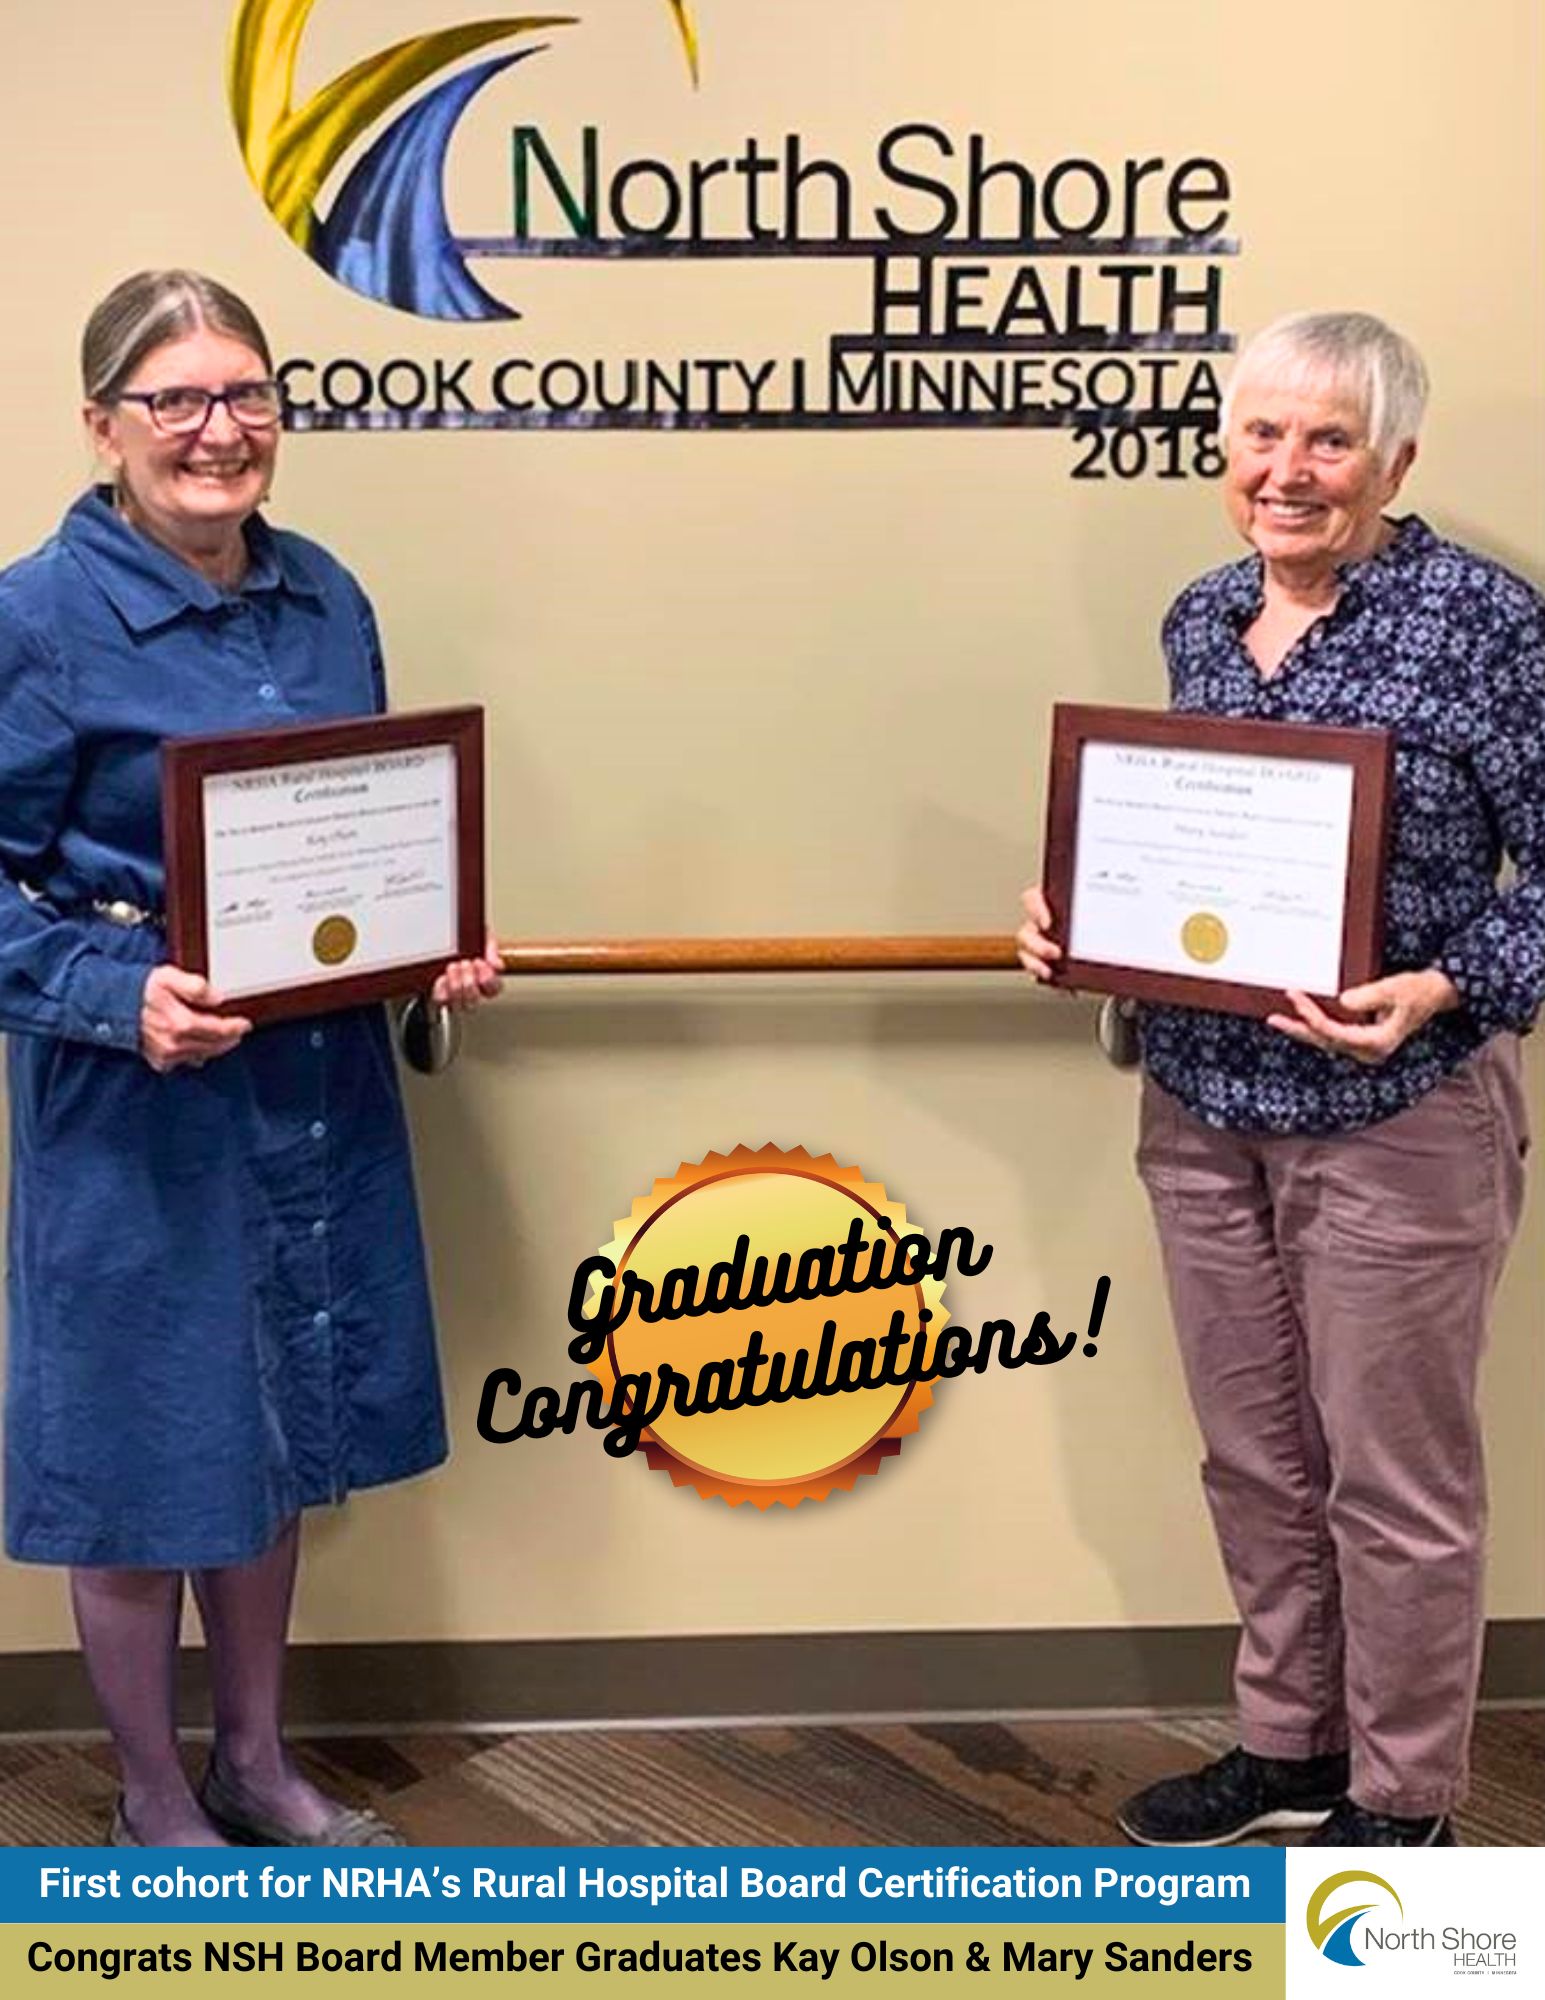 Congratulations Kay Olson & Mary Sanders on their Graduation!